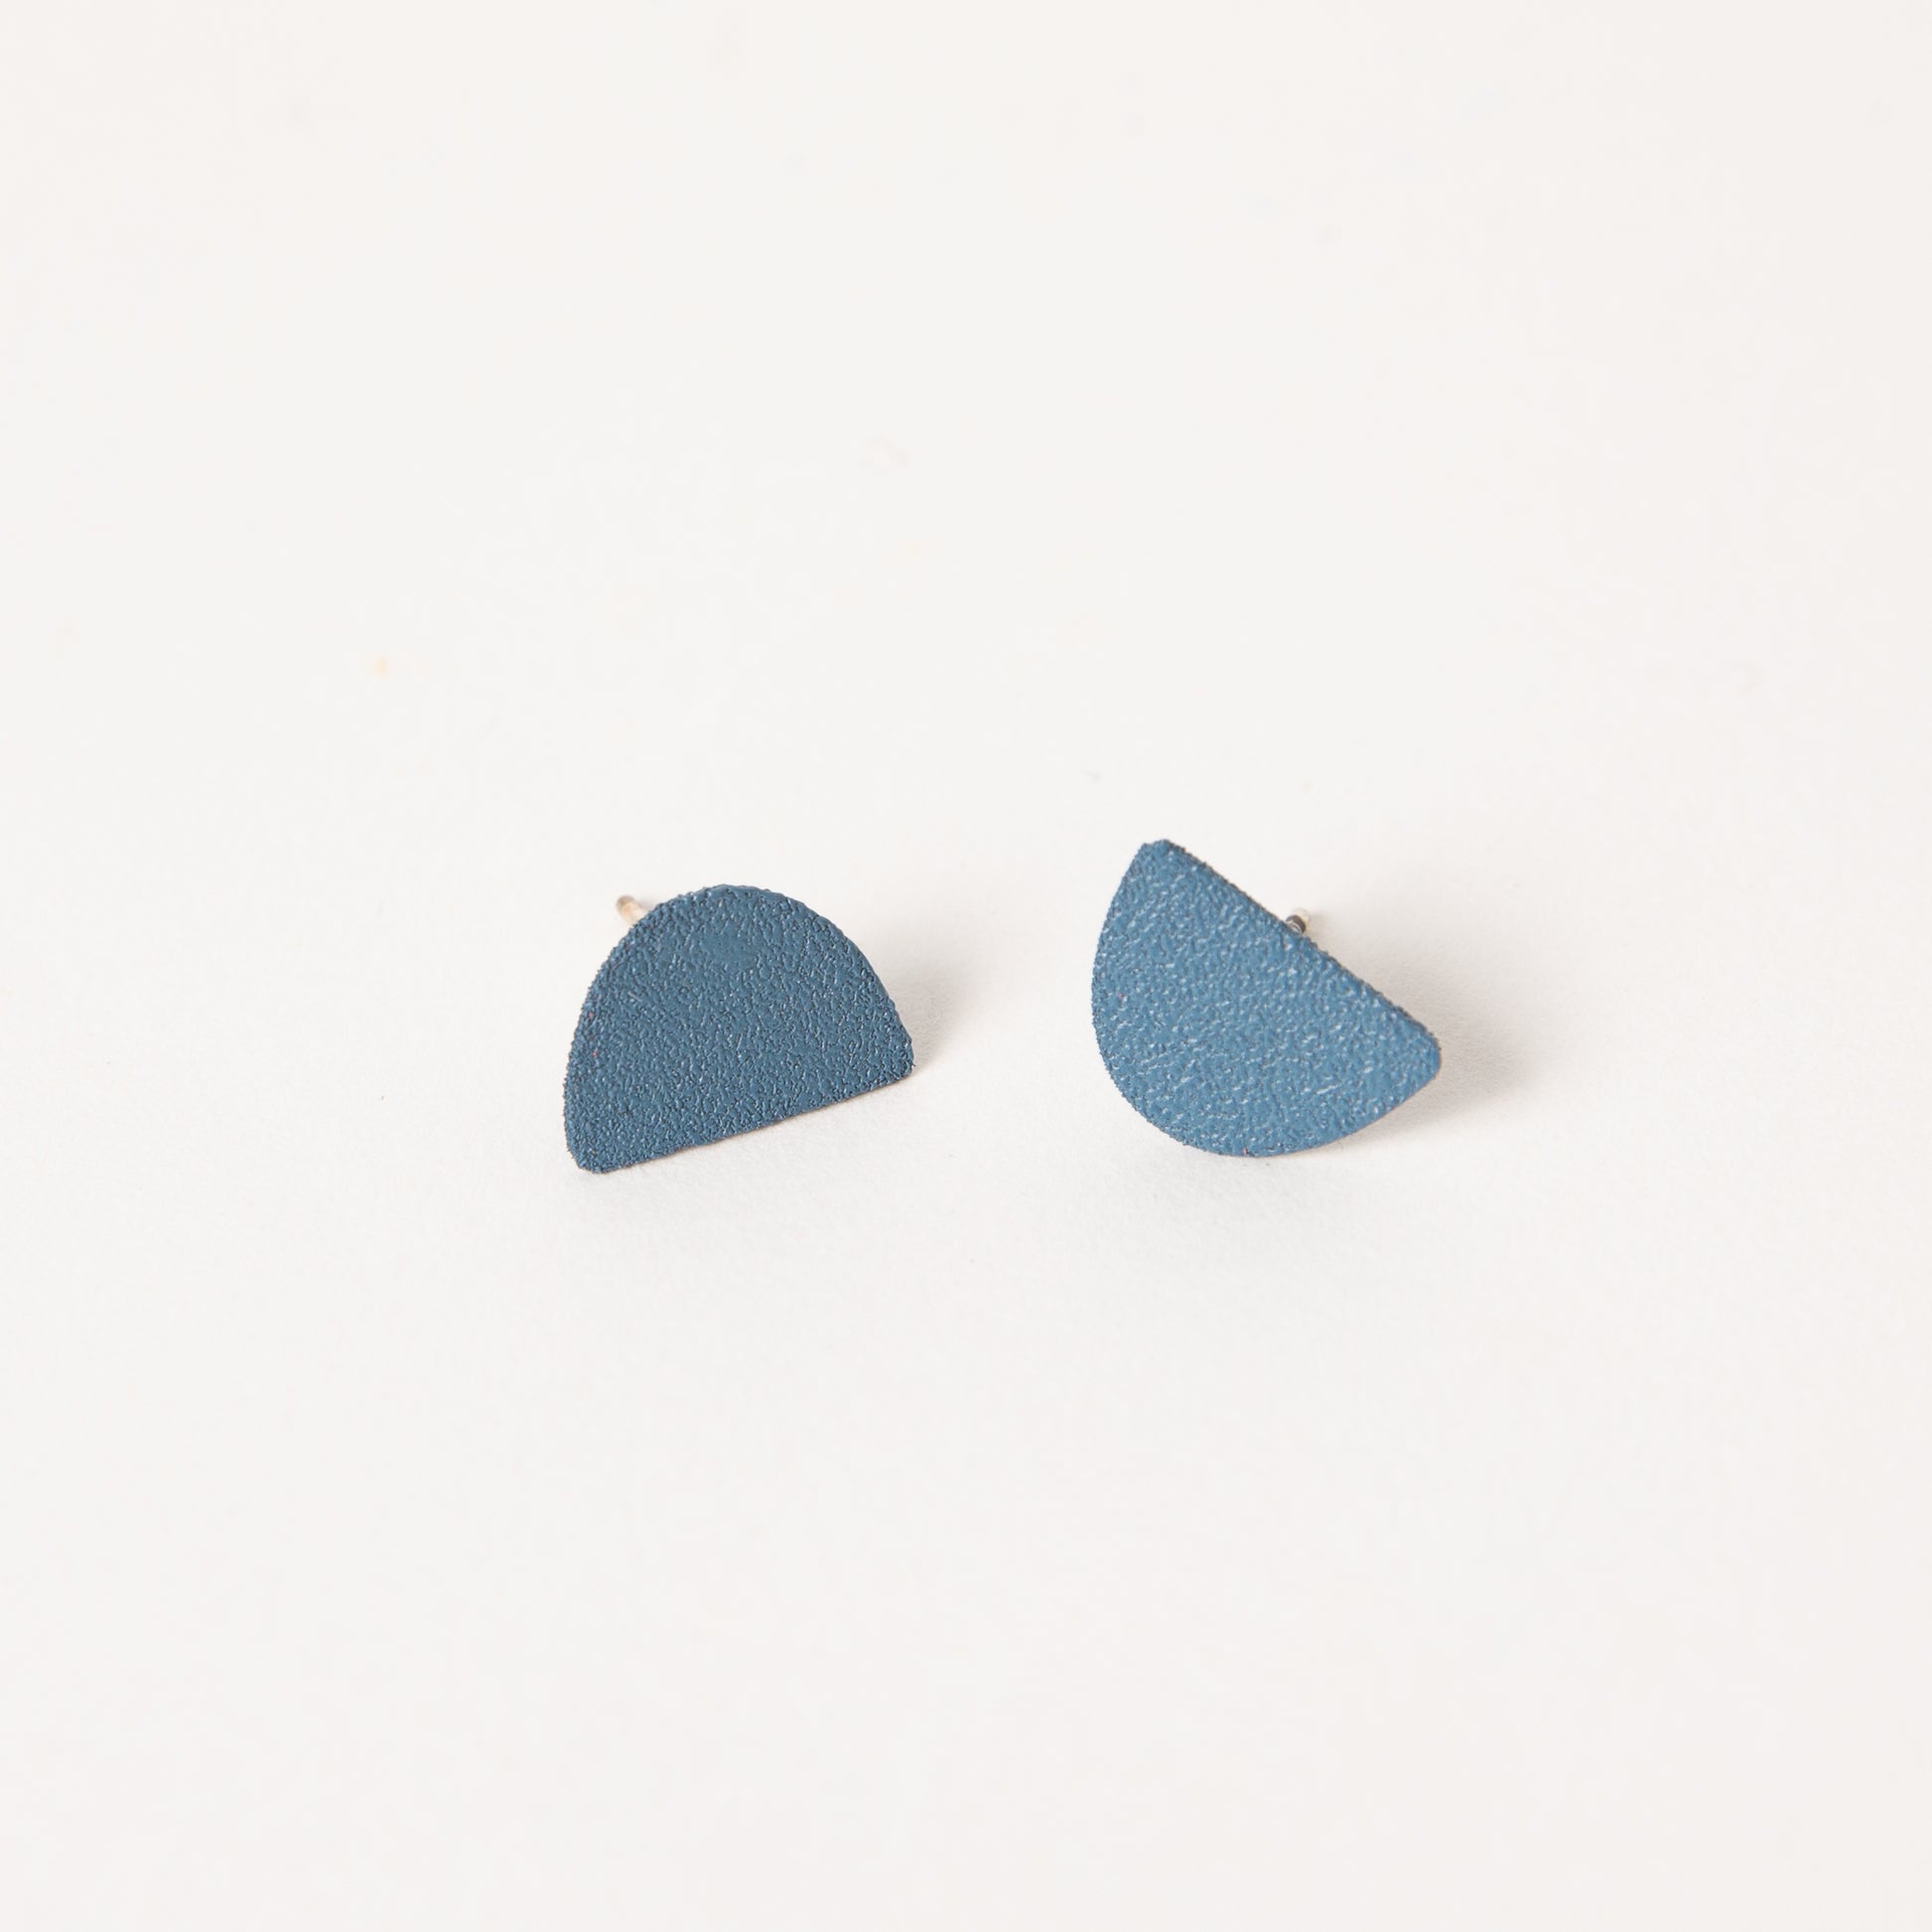 Mound earrings in cobalt.